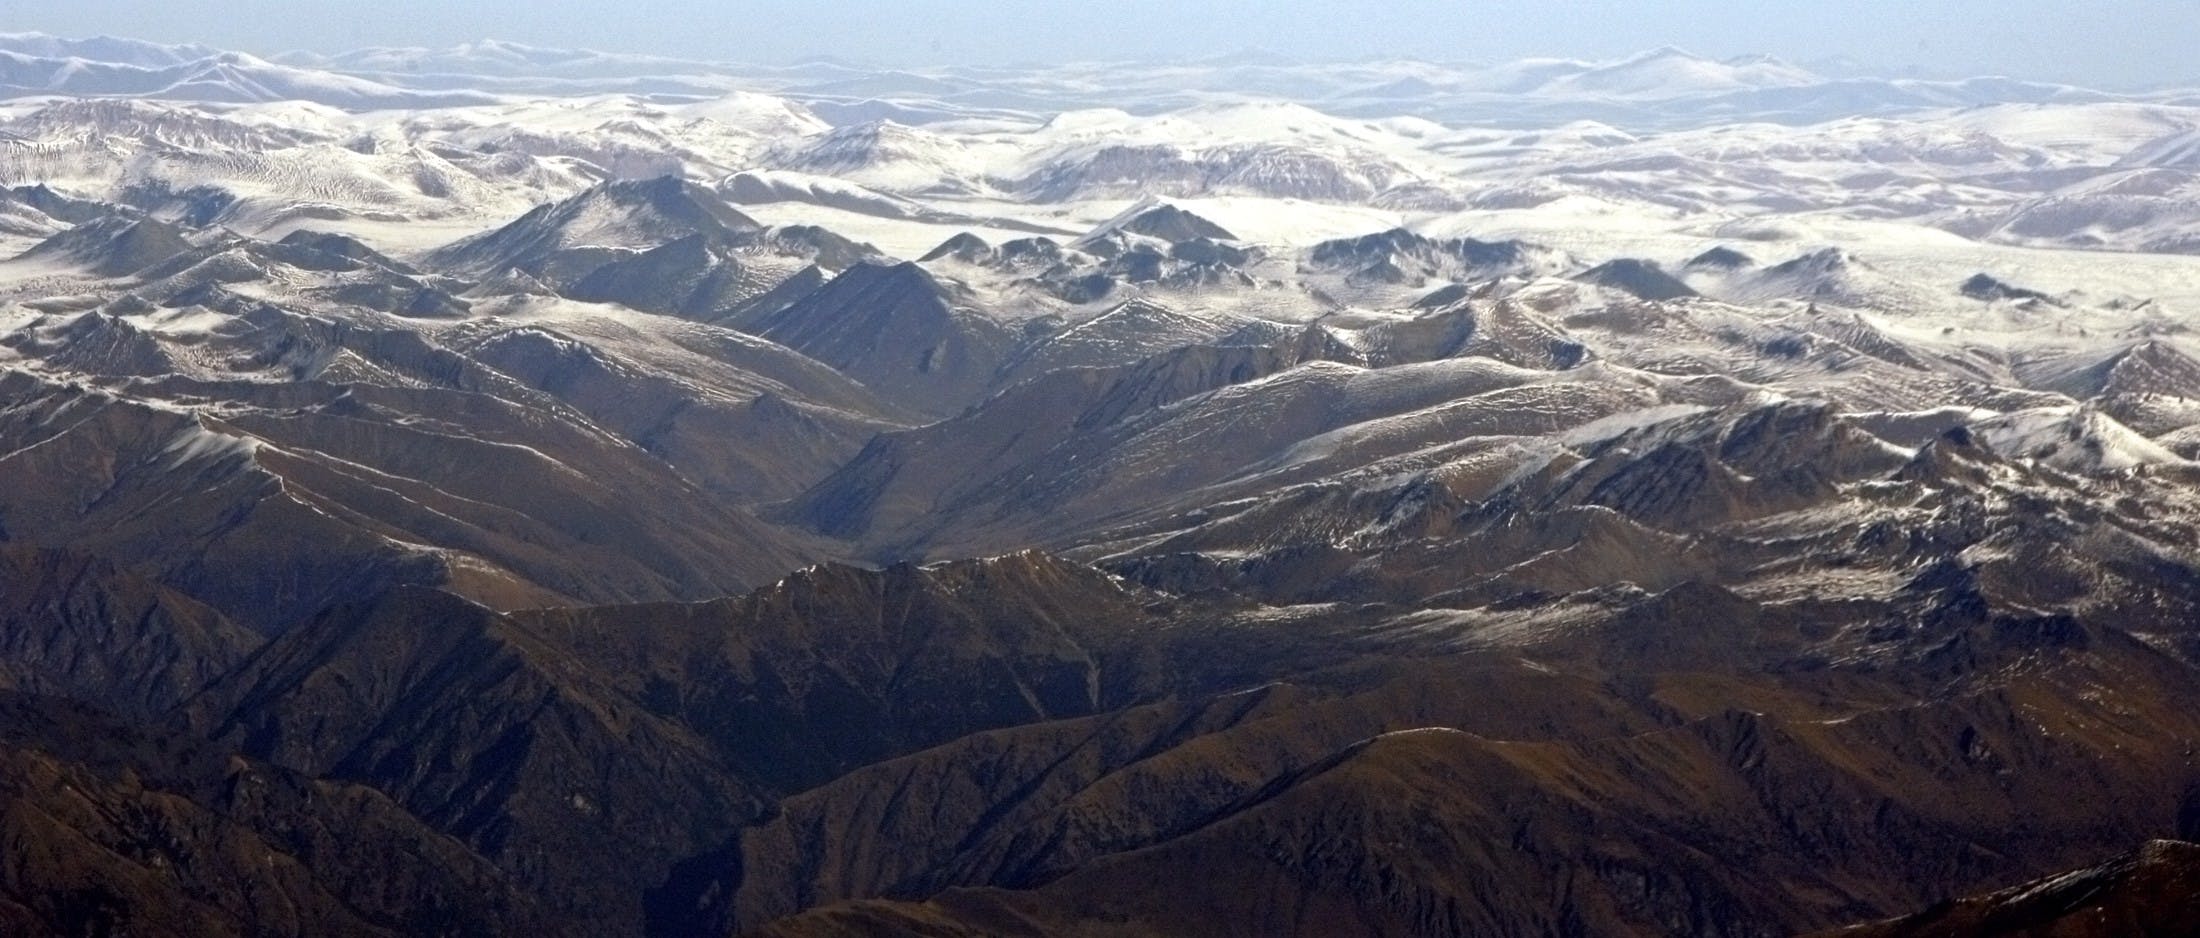 青藏高原 The Himalayan range is seen in this aerial view in Nepal